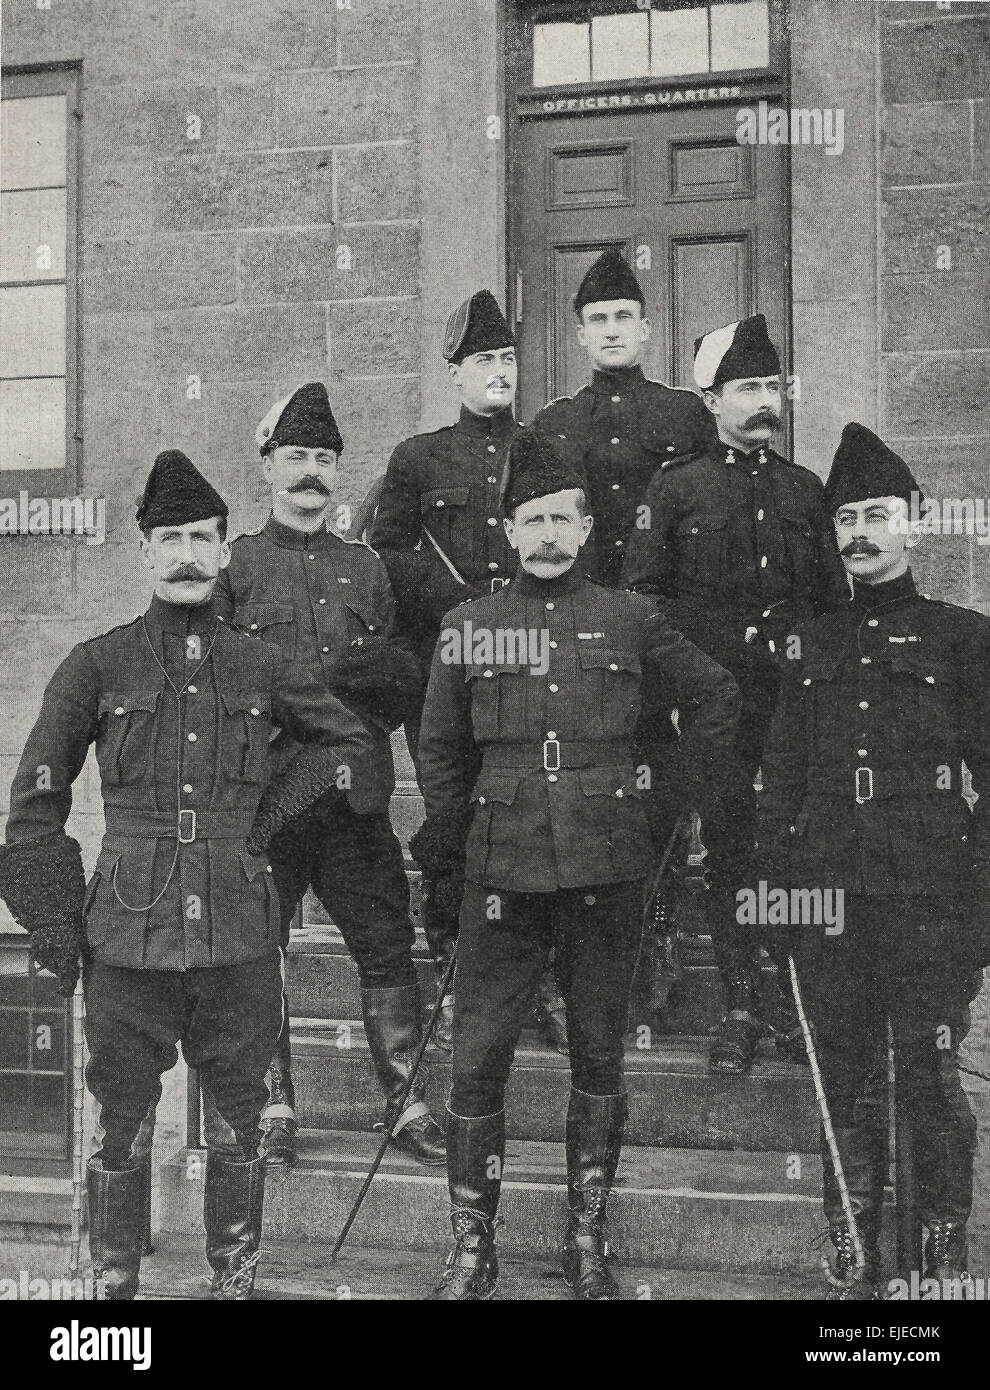 Groupe d'Officiers, deuxième contingent de fusiliers canadiens, à Toronto, Canada, vers 1898 Banque D'Images